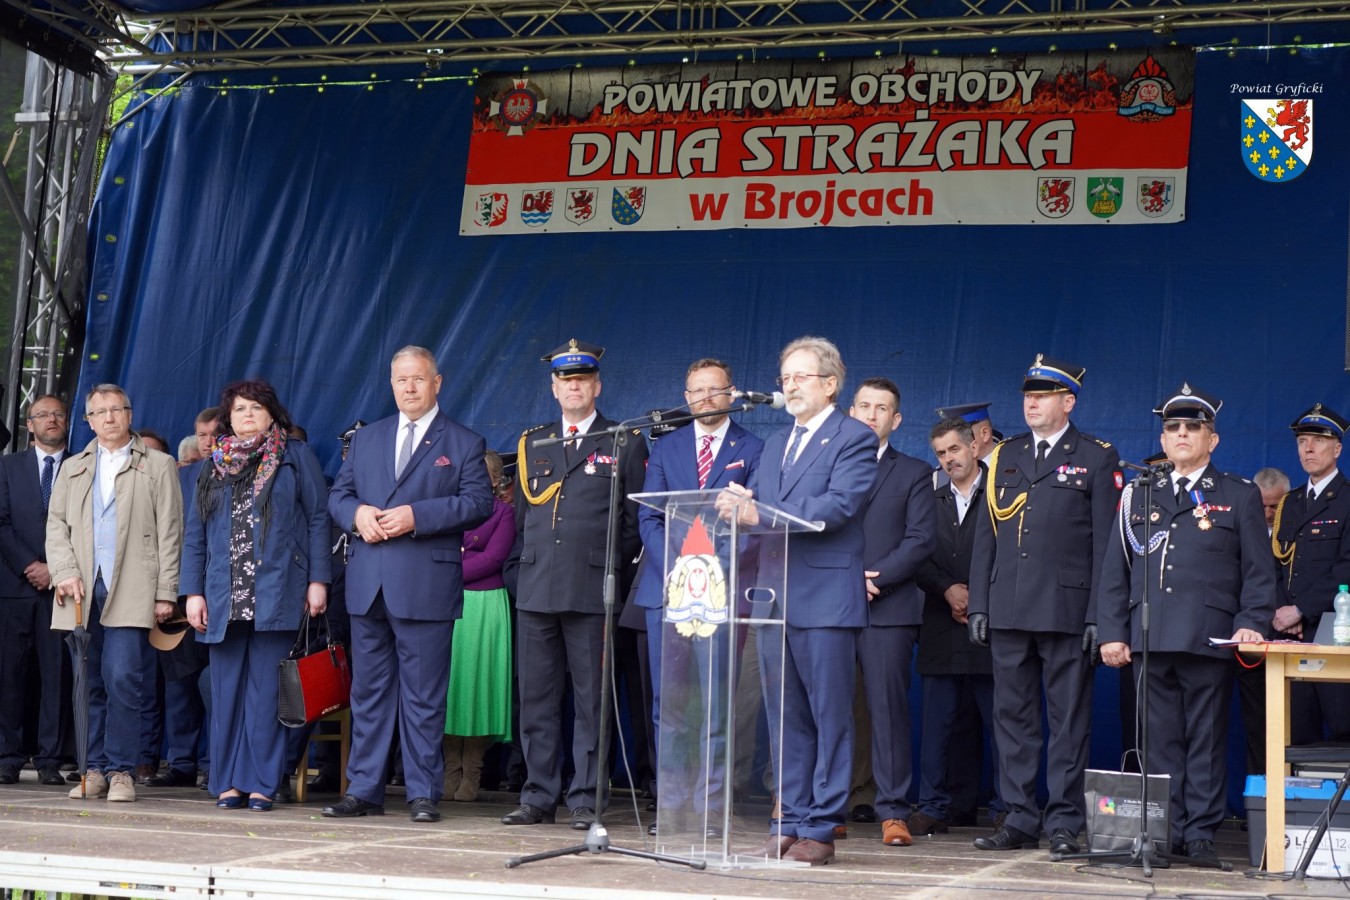 Powiatowe Obchody Dnia Strażaka w Brojcach